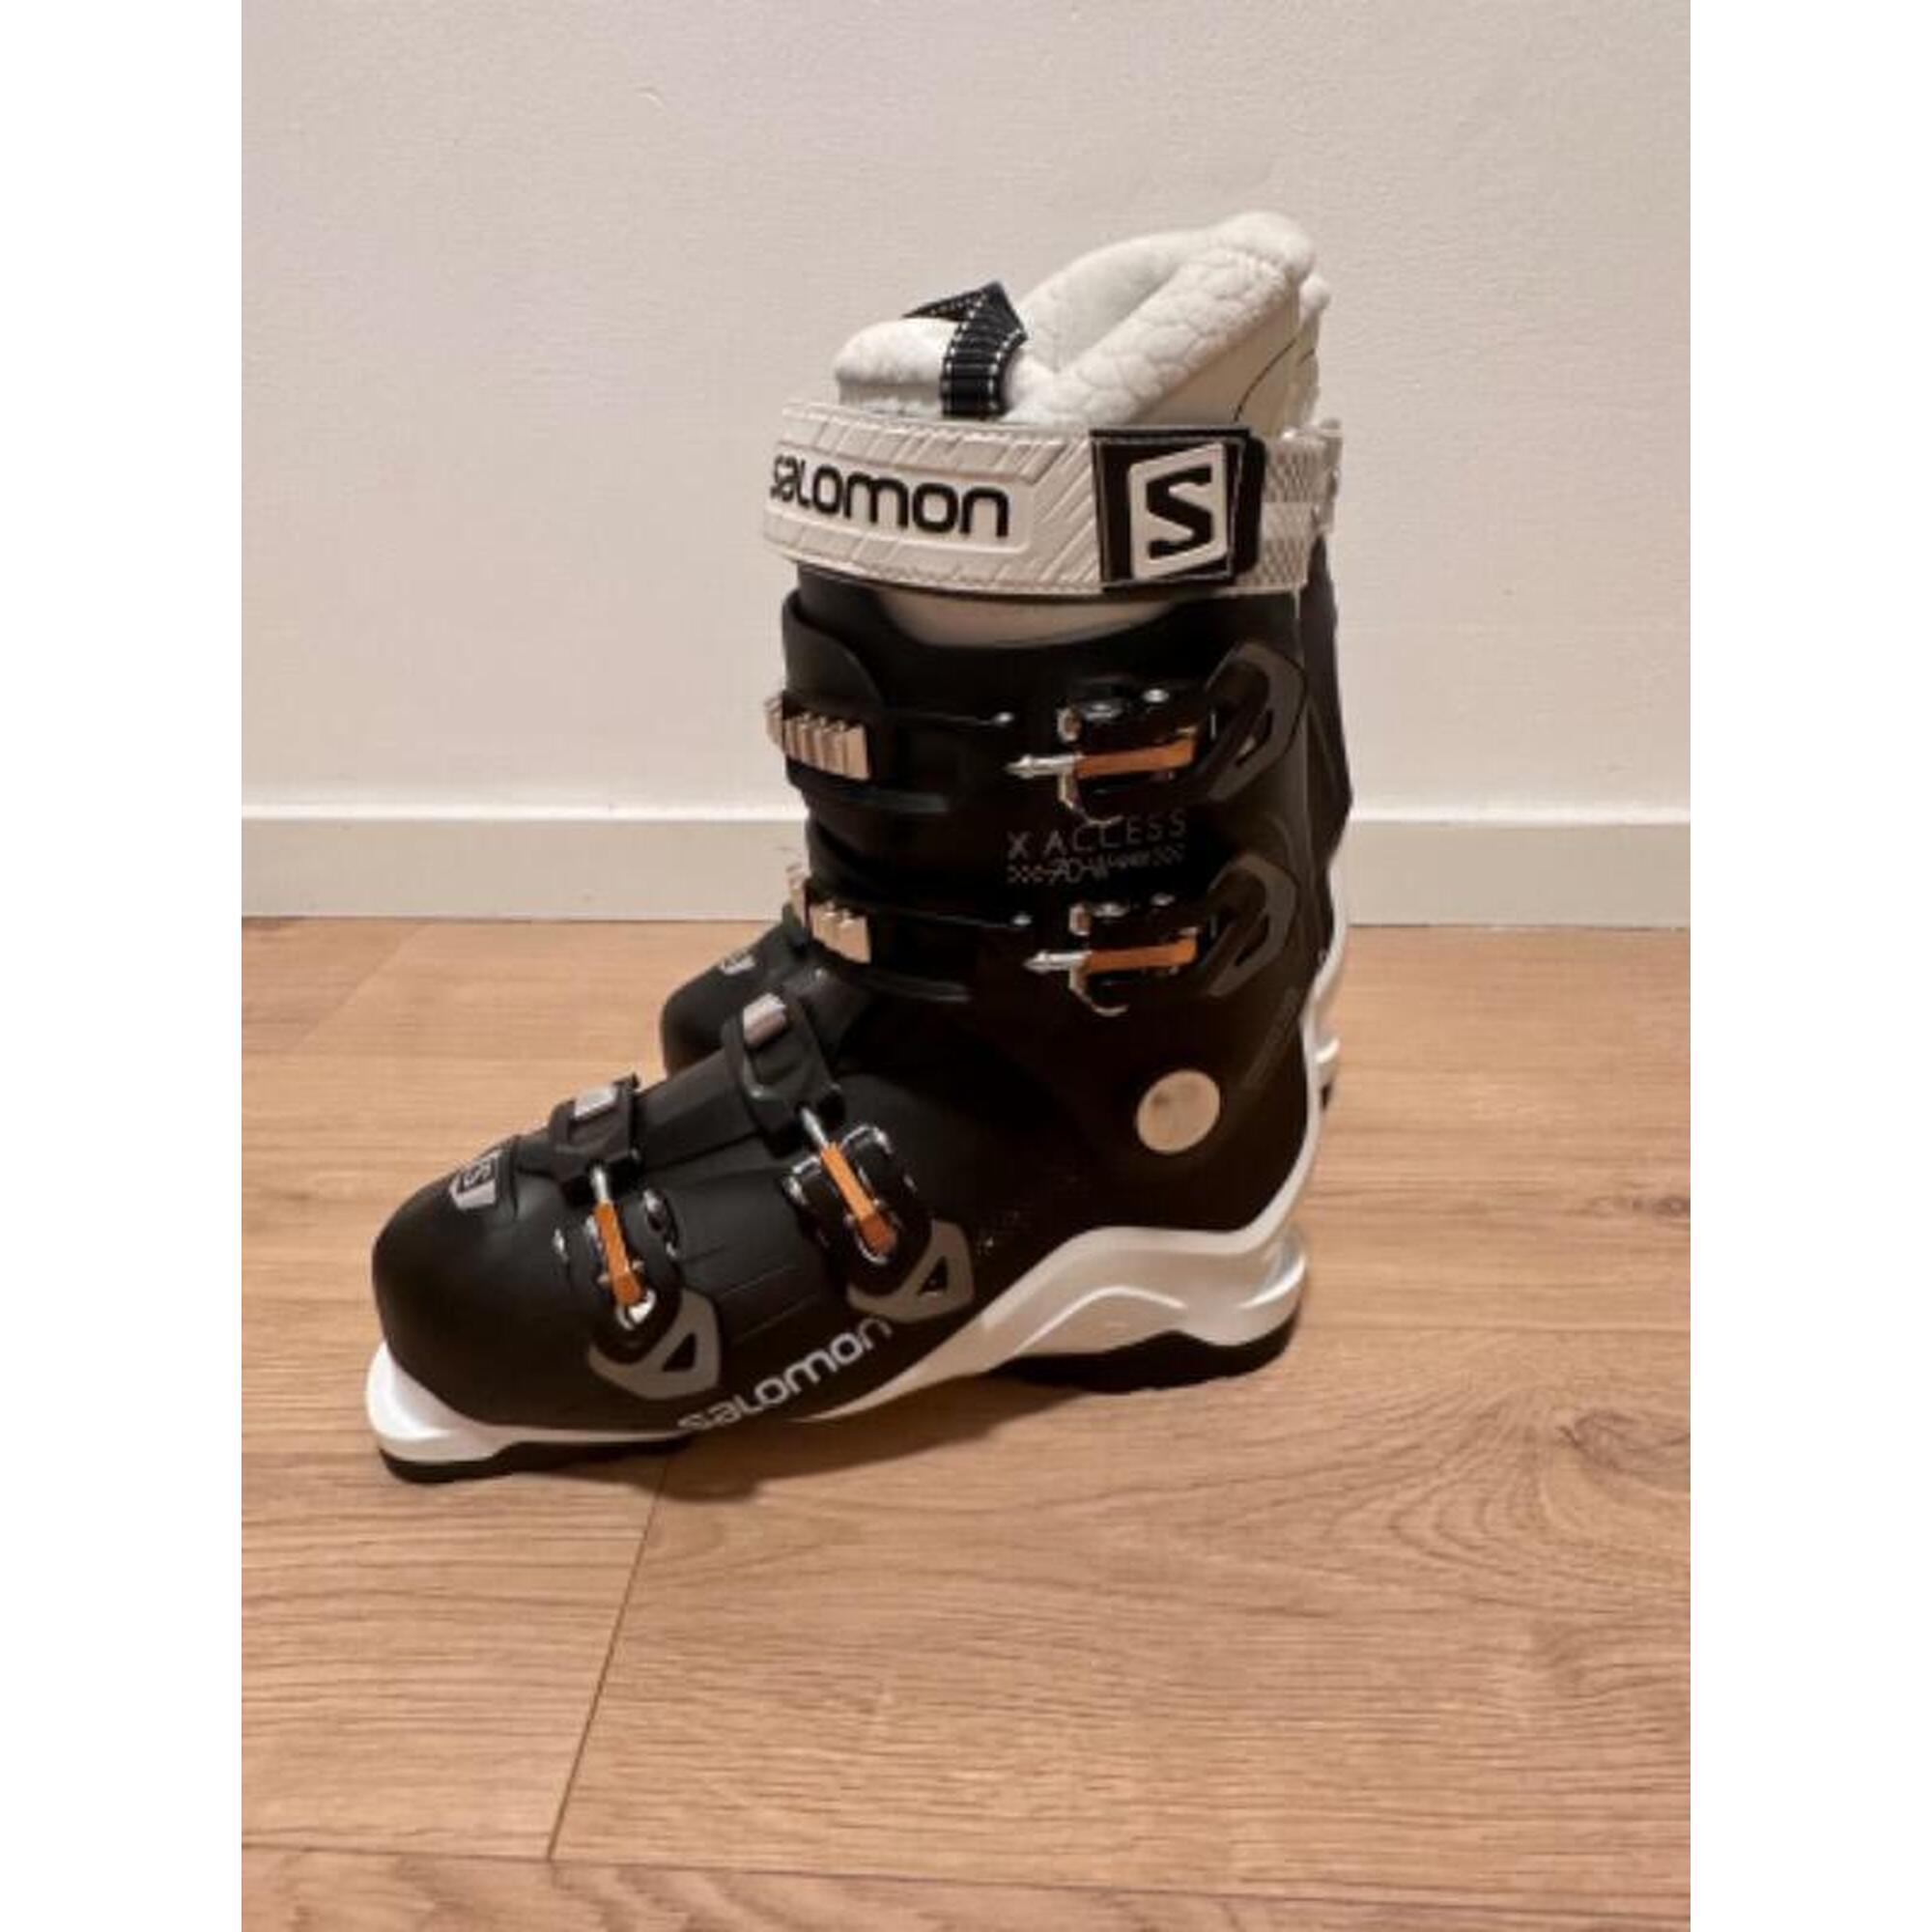 C2C - Bottes de ski Salomon